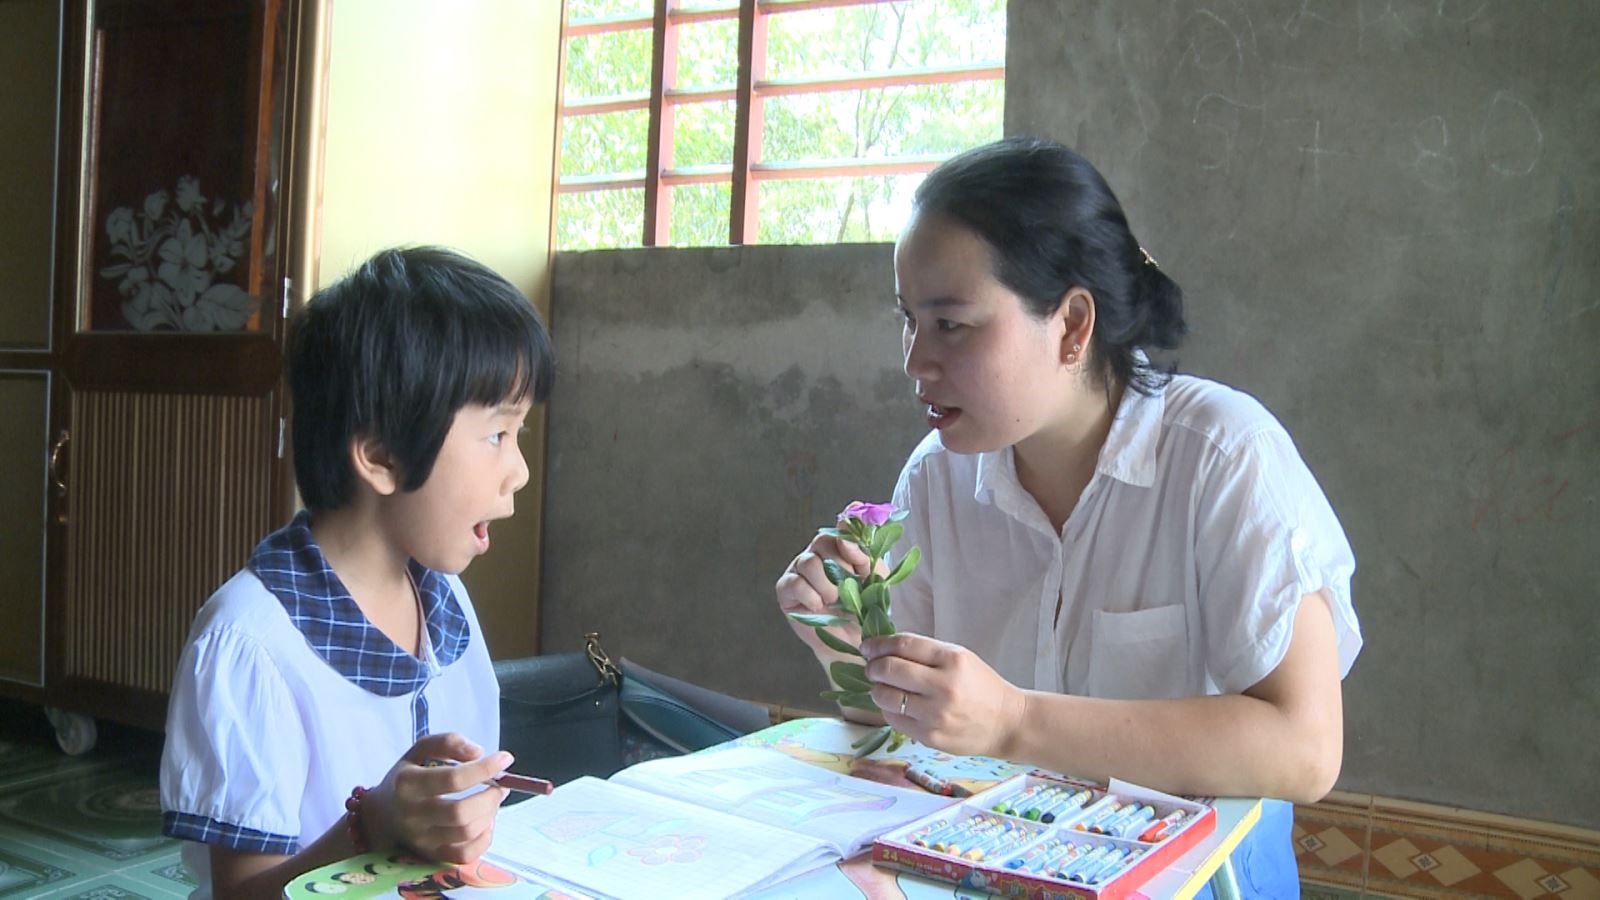 Chị Nguyễn Hoàng Vân, kỹ thuật viên Phục hồi chức năng, Trung tâm PHCN Thiện Nhân, Hội Từ thiện tỉnh đang hướng dẫn học sinh khuyết tật học tại nhà.